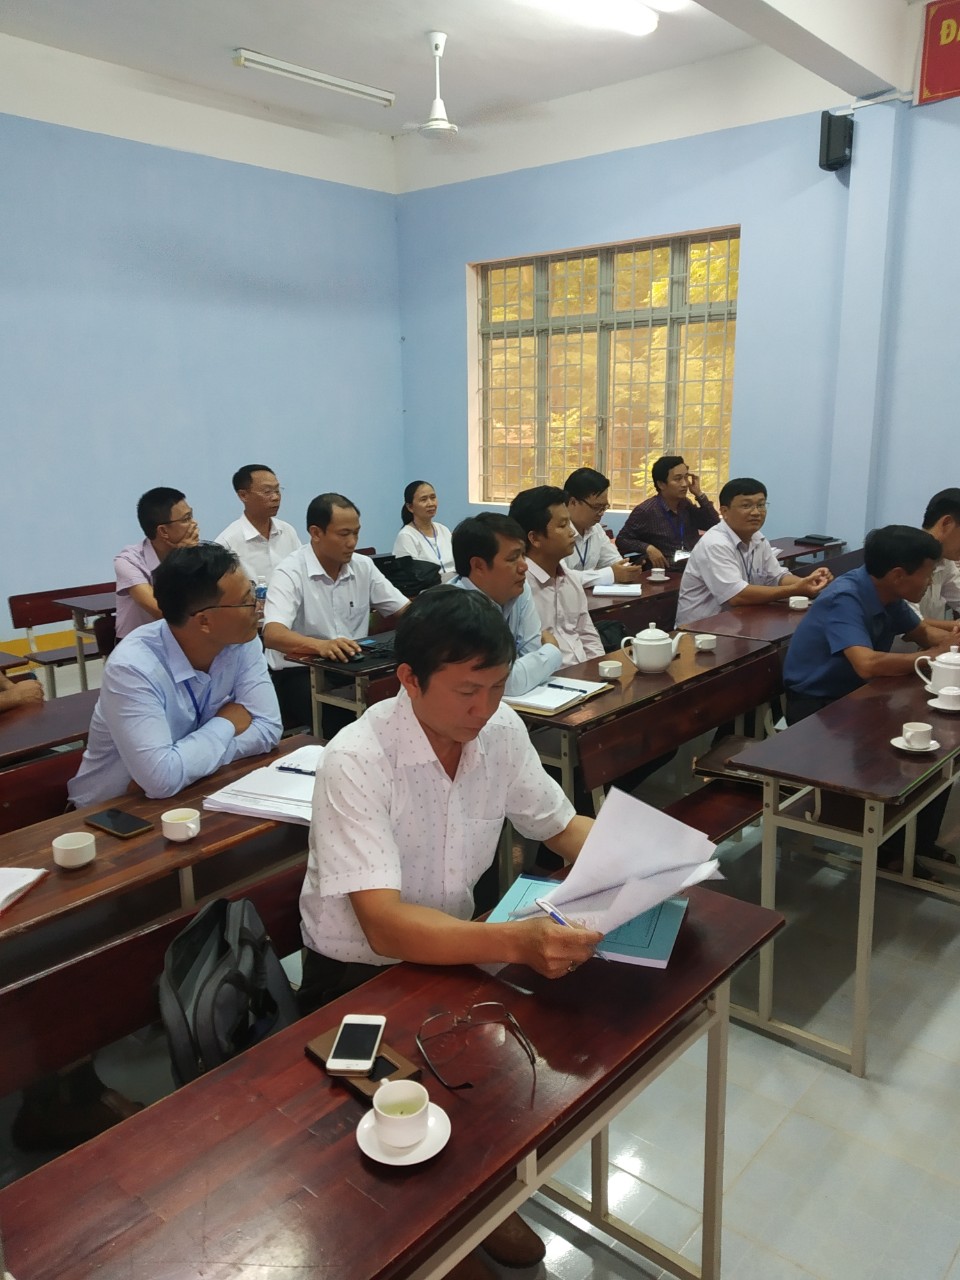 Đoàn đánh giá ngoài công nhận đạt chuẩn quốc gia và đạt kiểm định chất lượng giáo dục tại trường THPT Nguyễn Du năm 2020